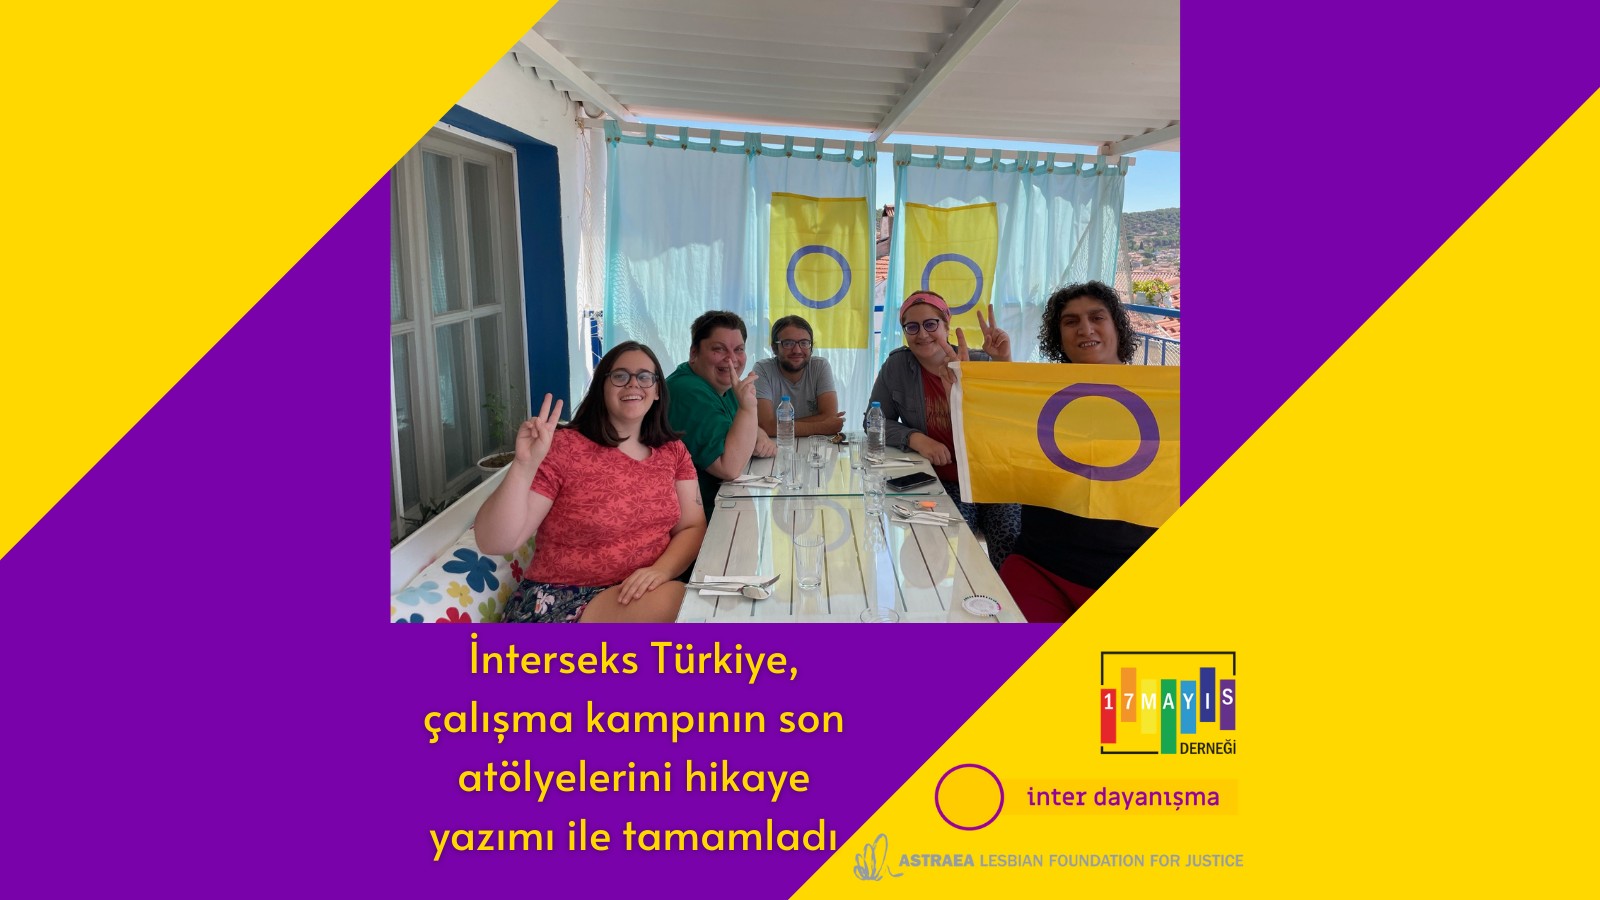 İnterseks Türkiye, Çalışma Kampının Son Atölyelerini Hikaye Yazımı İle Tamamladı - 17 Mayıs